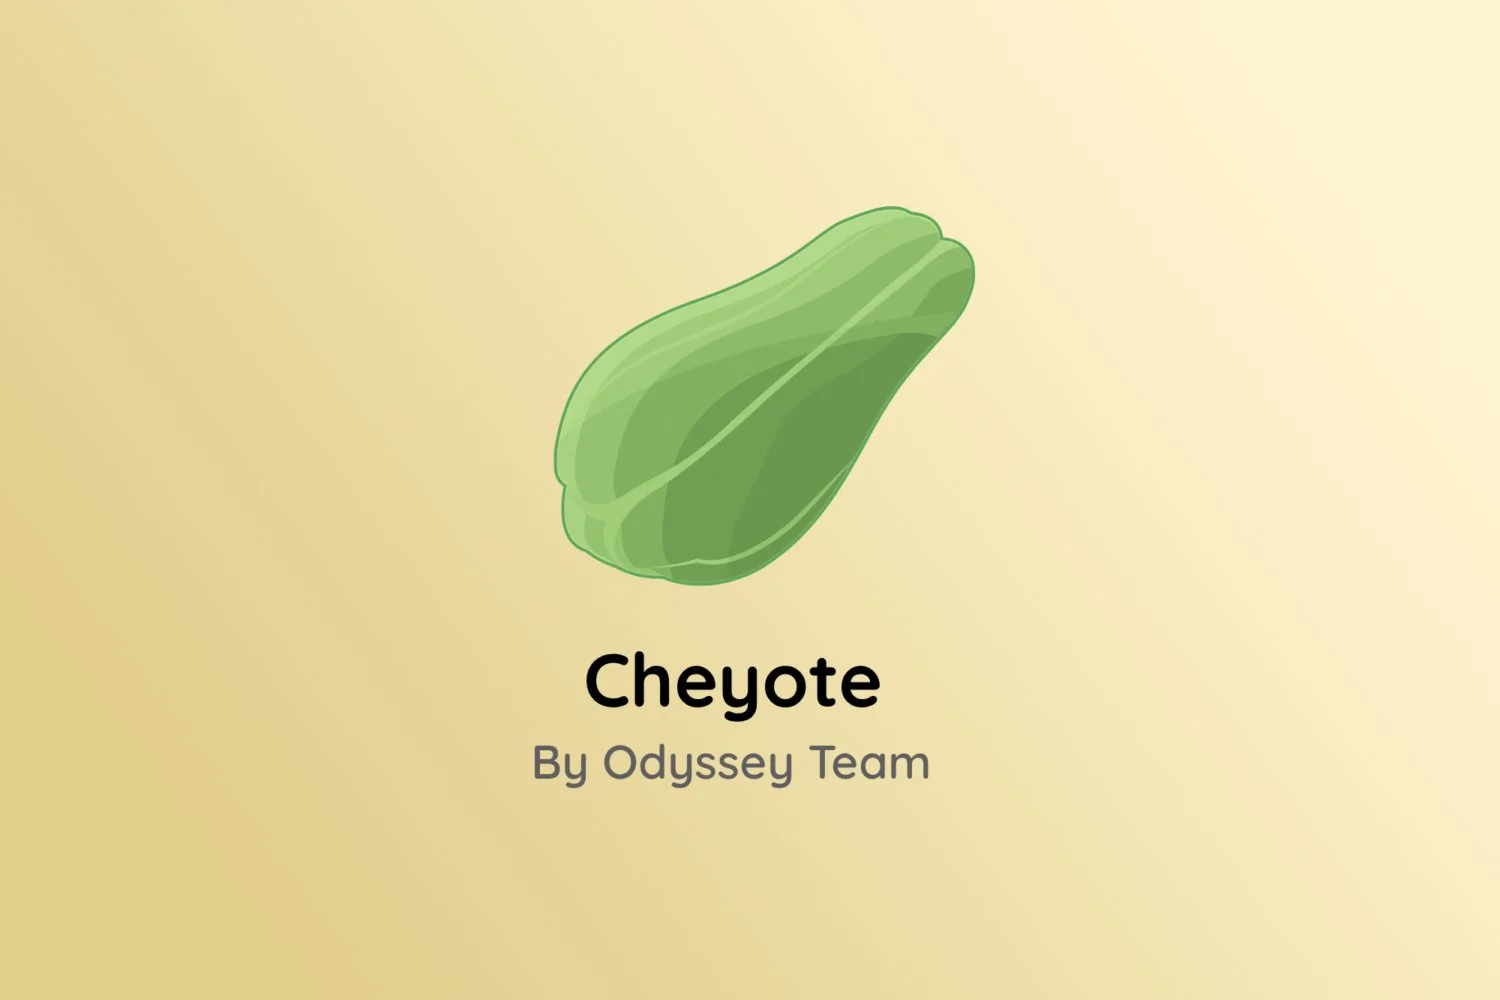 Cheyote